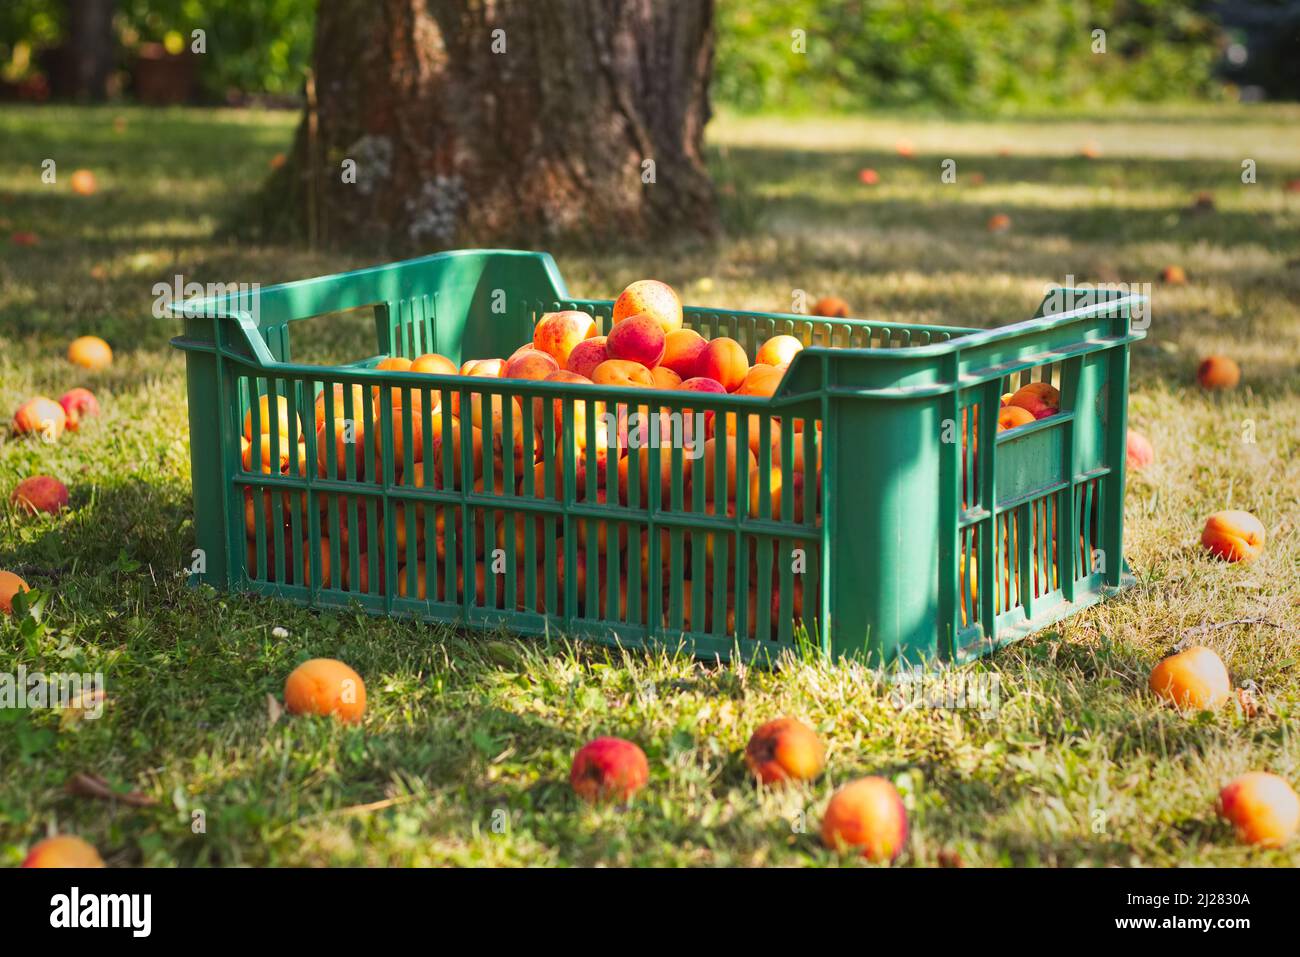 Plastikkiste voller Aprikosen im Garten während der Erntezeit,  Bio-Bauernhof, Ernte von hausgemachten Früchten Stockfotografie - Alamy